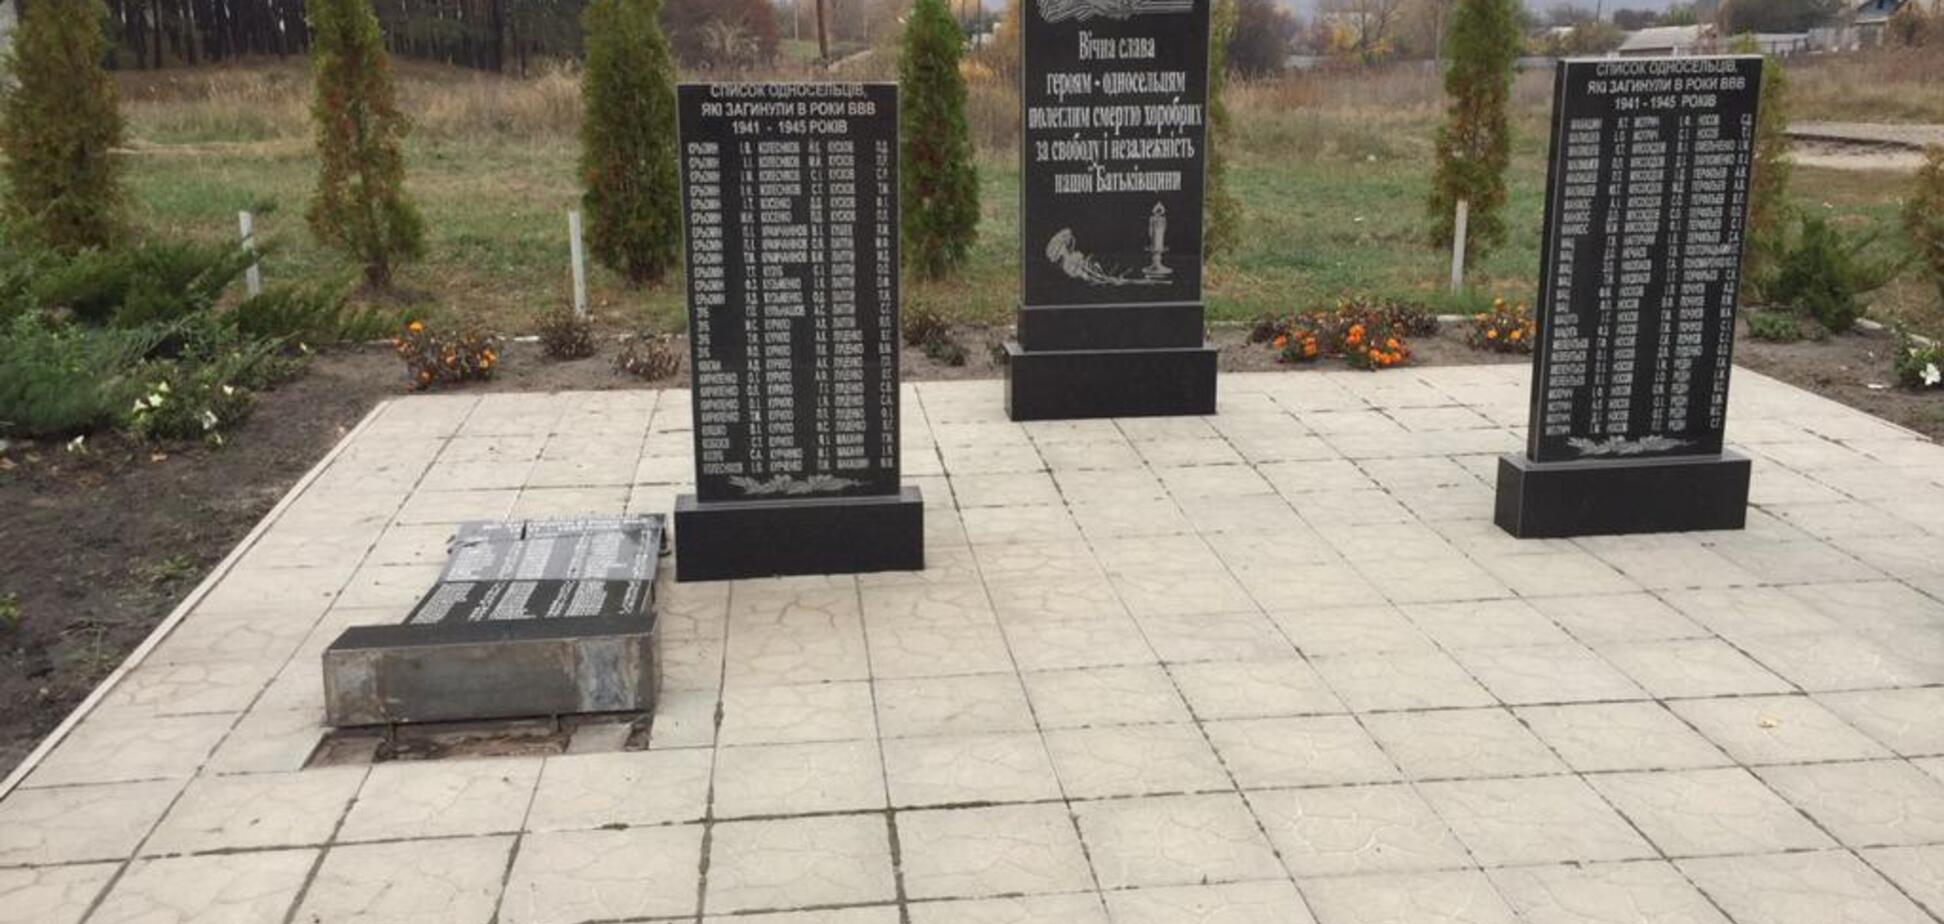 Під Харковом знівечили меморіал жертвам Другої світової війни